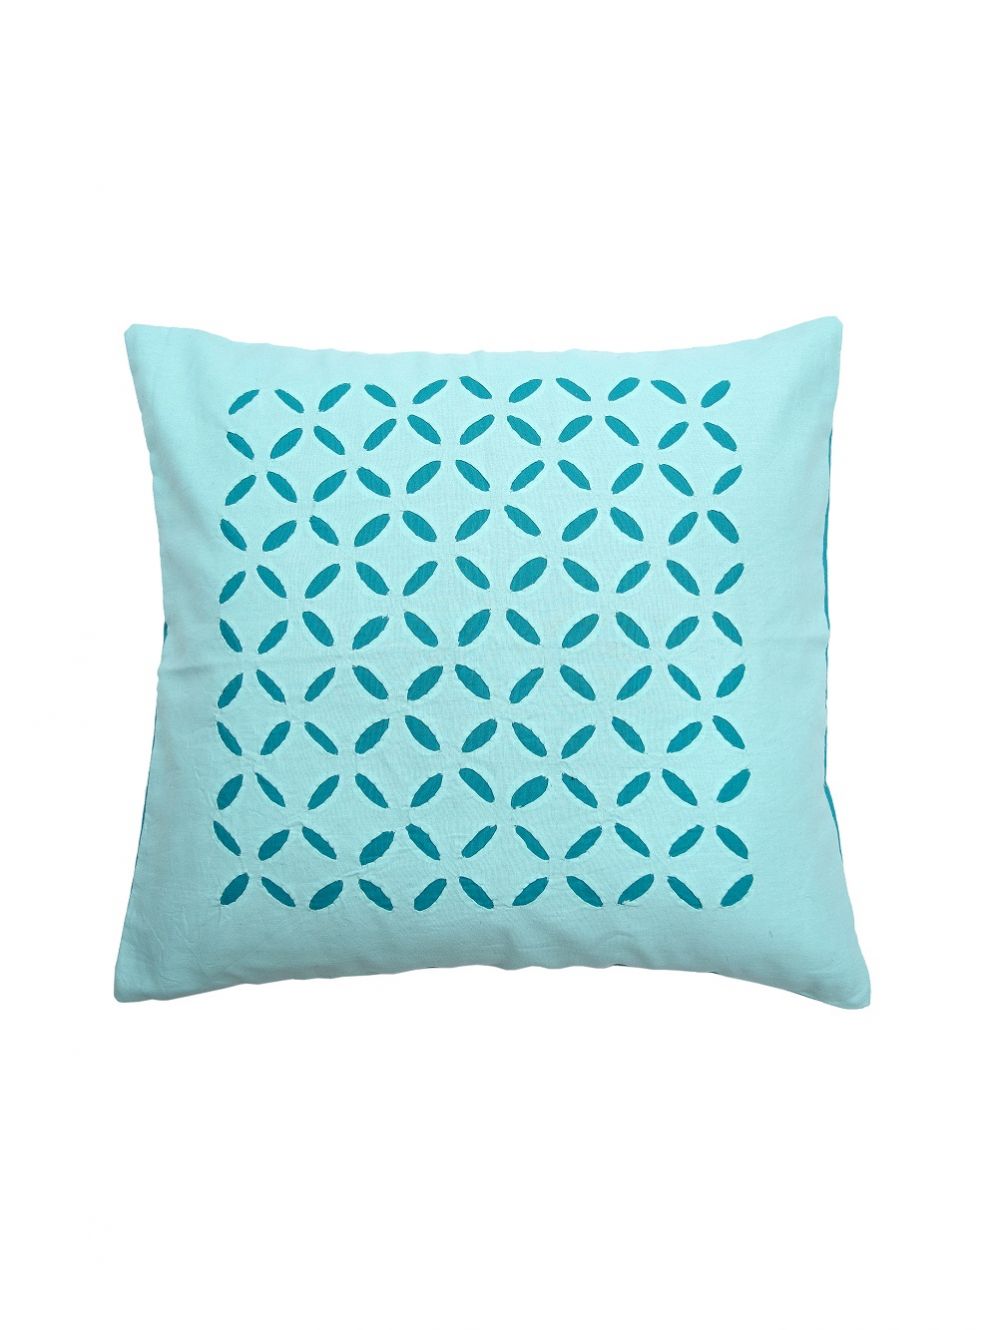 Aquamarine Applique Cutwork Cotton Cushion Cover